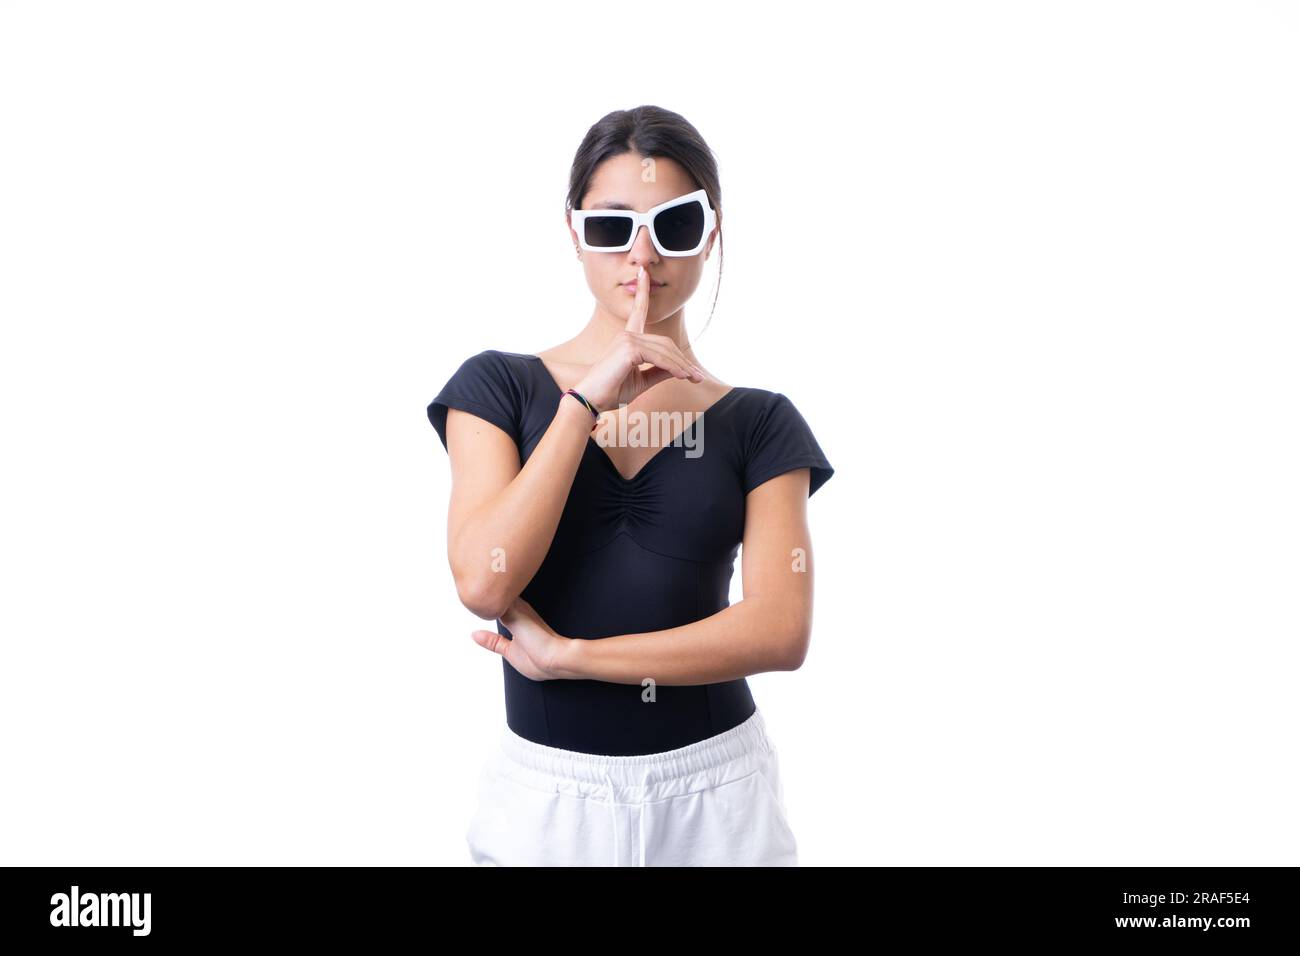 Studioporträt einer jungen braunen Modelin, die eine lustige, schicke weiße Sonnenbrille trägt. Stille Stockfoto